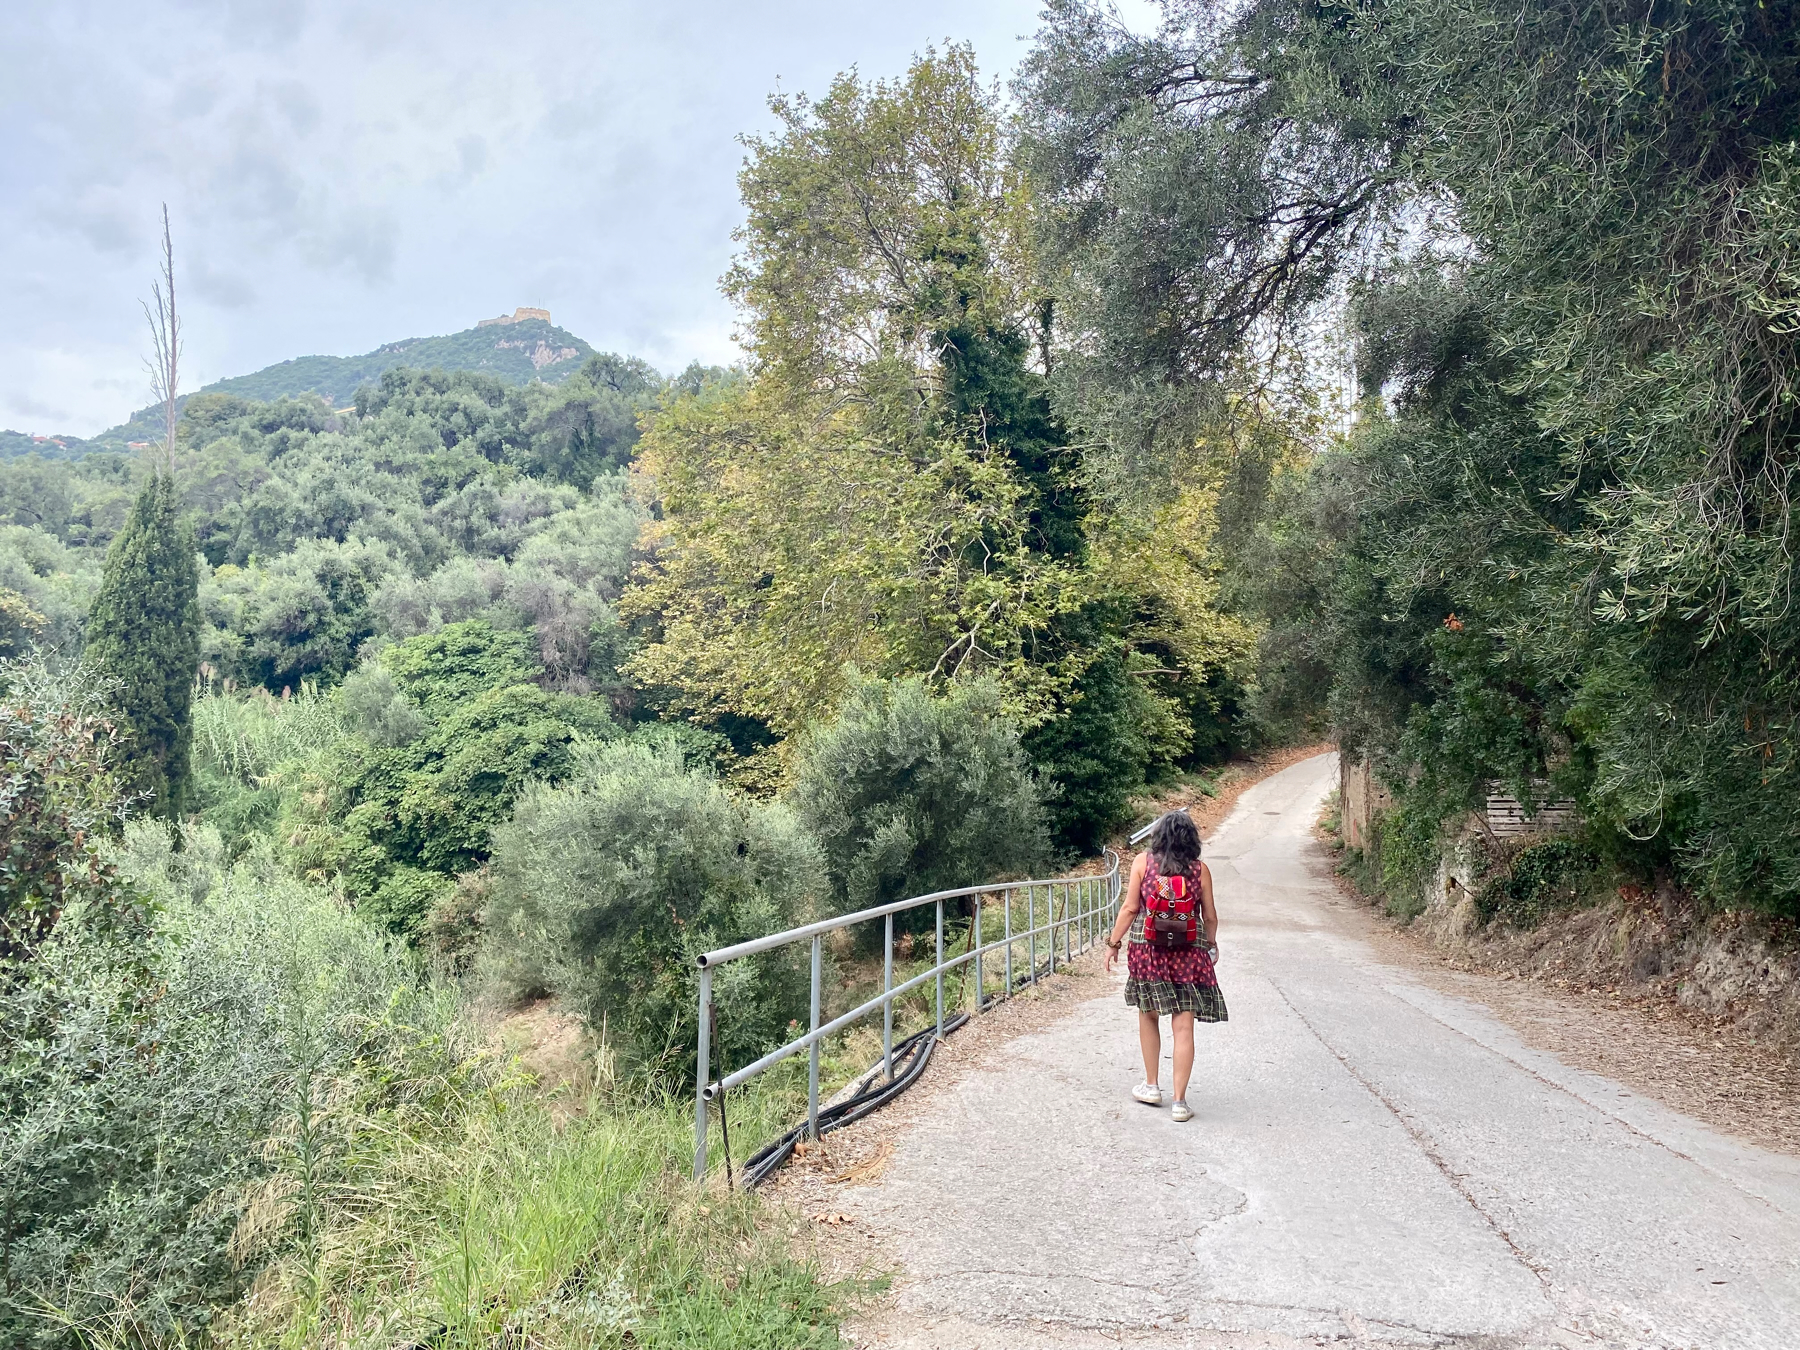 Woman walking on a narrow road on a hillside amongst trees